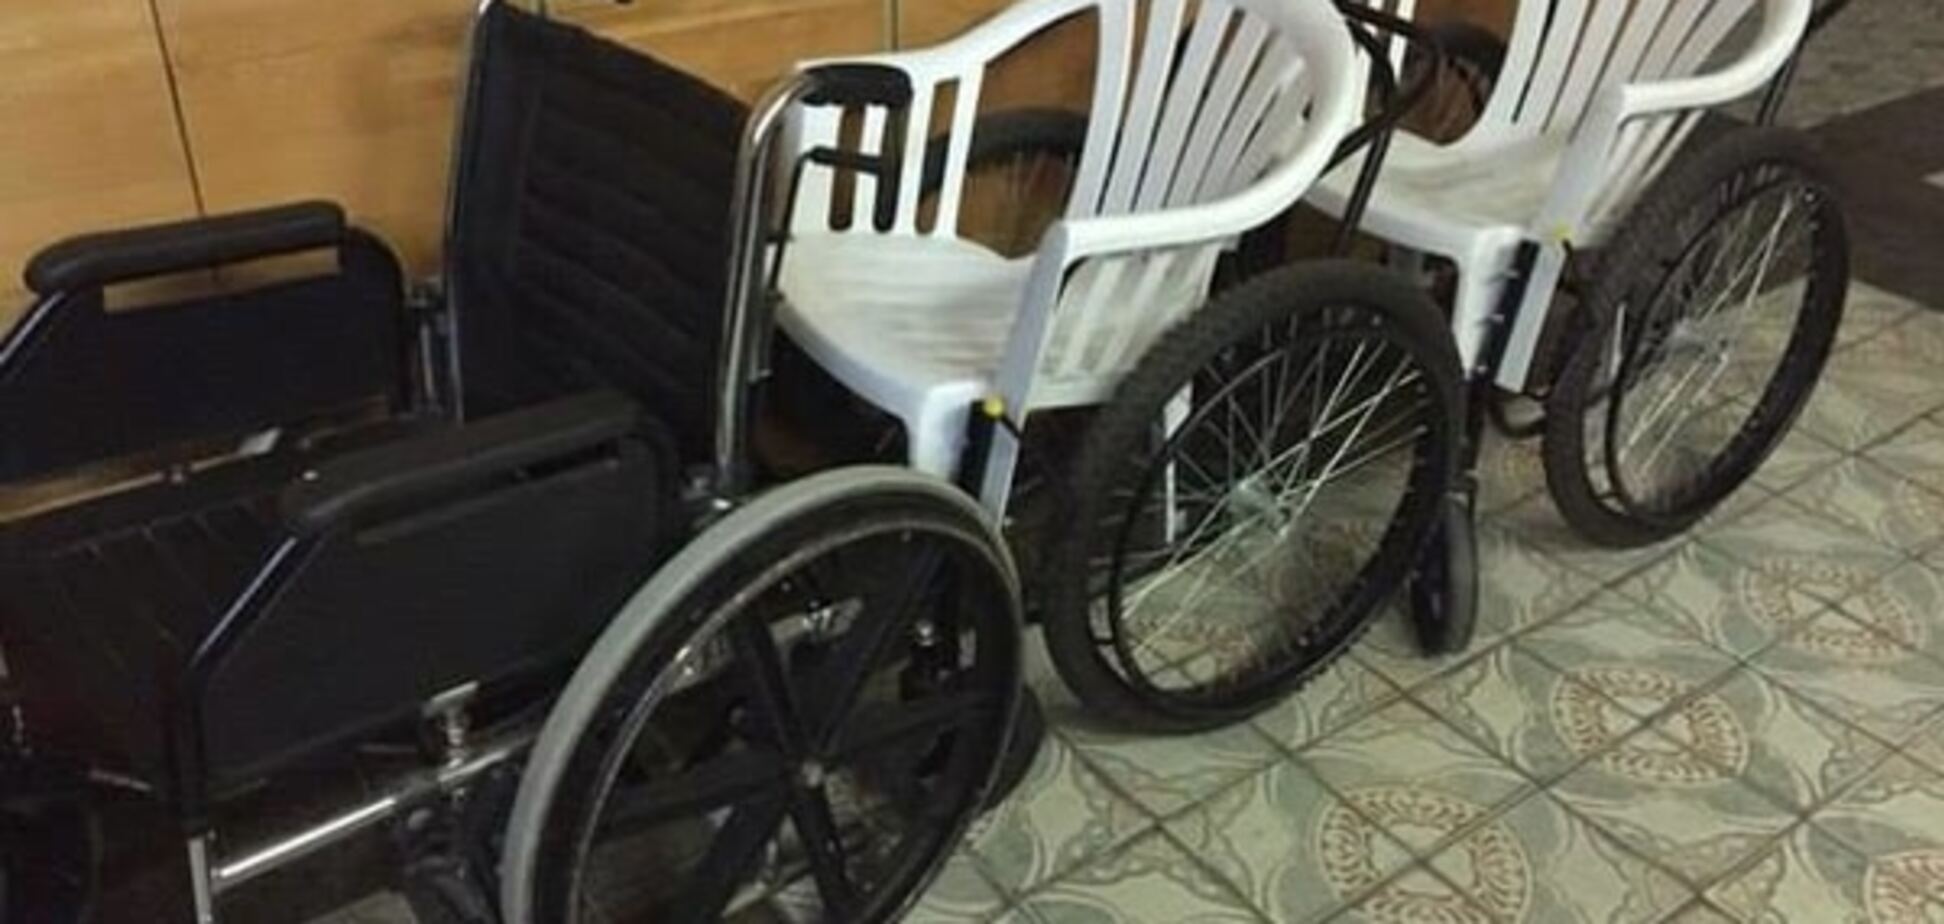 Соцсети шокировали фото инвалидных колясок из киевской больницы